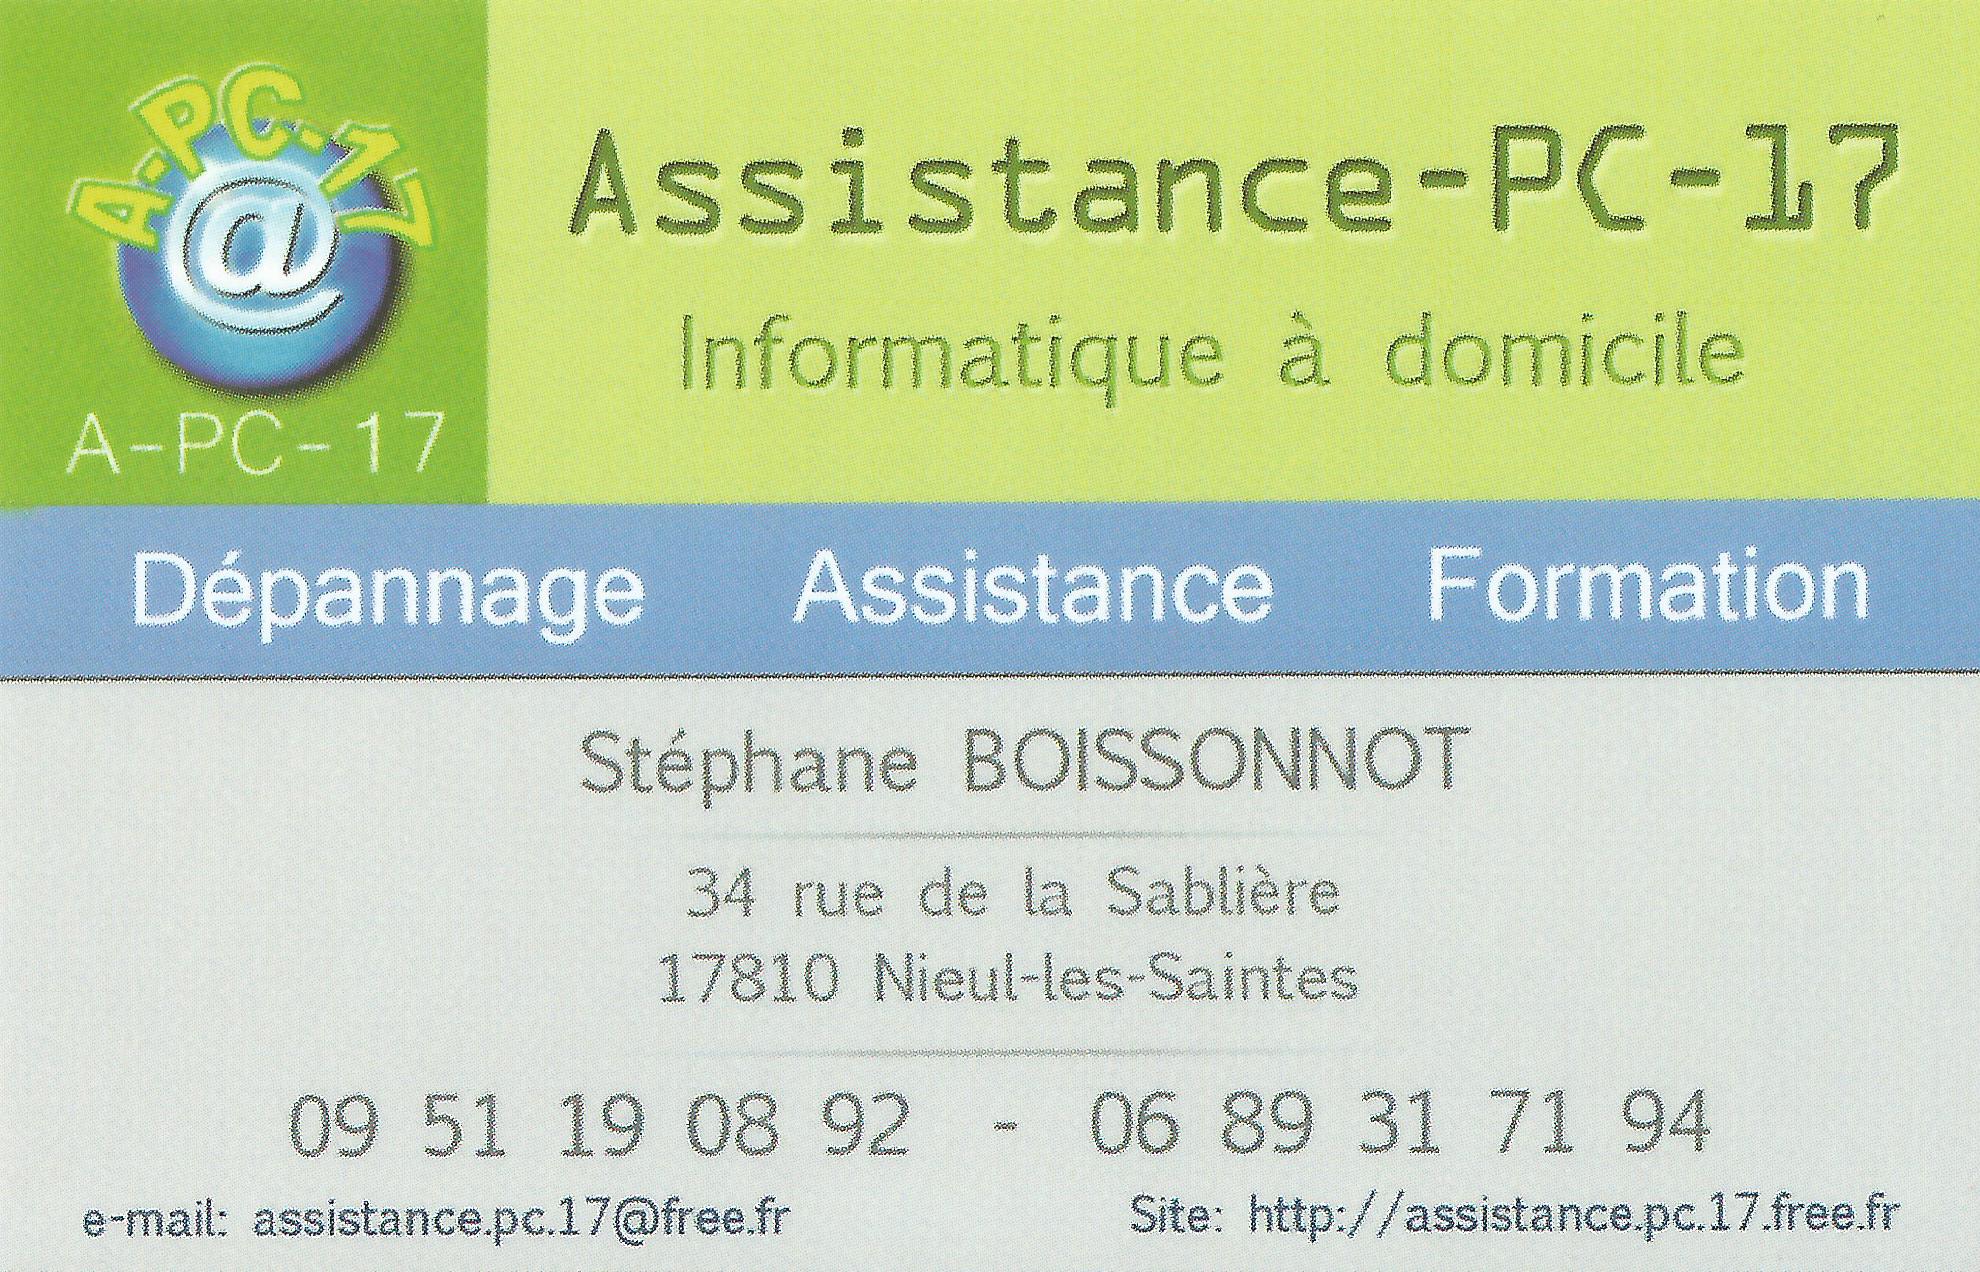 Assistance PC 17